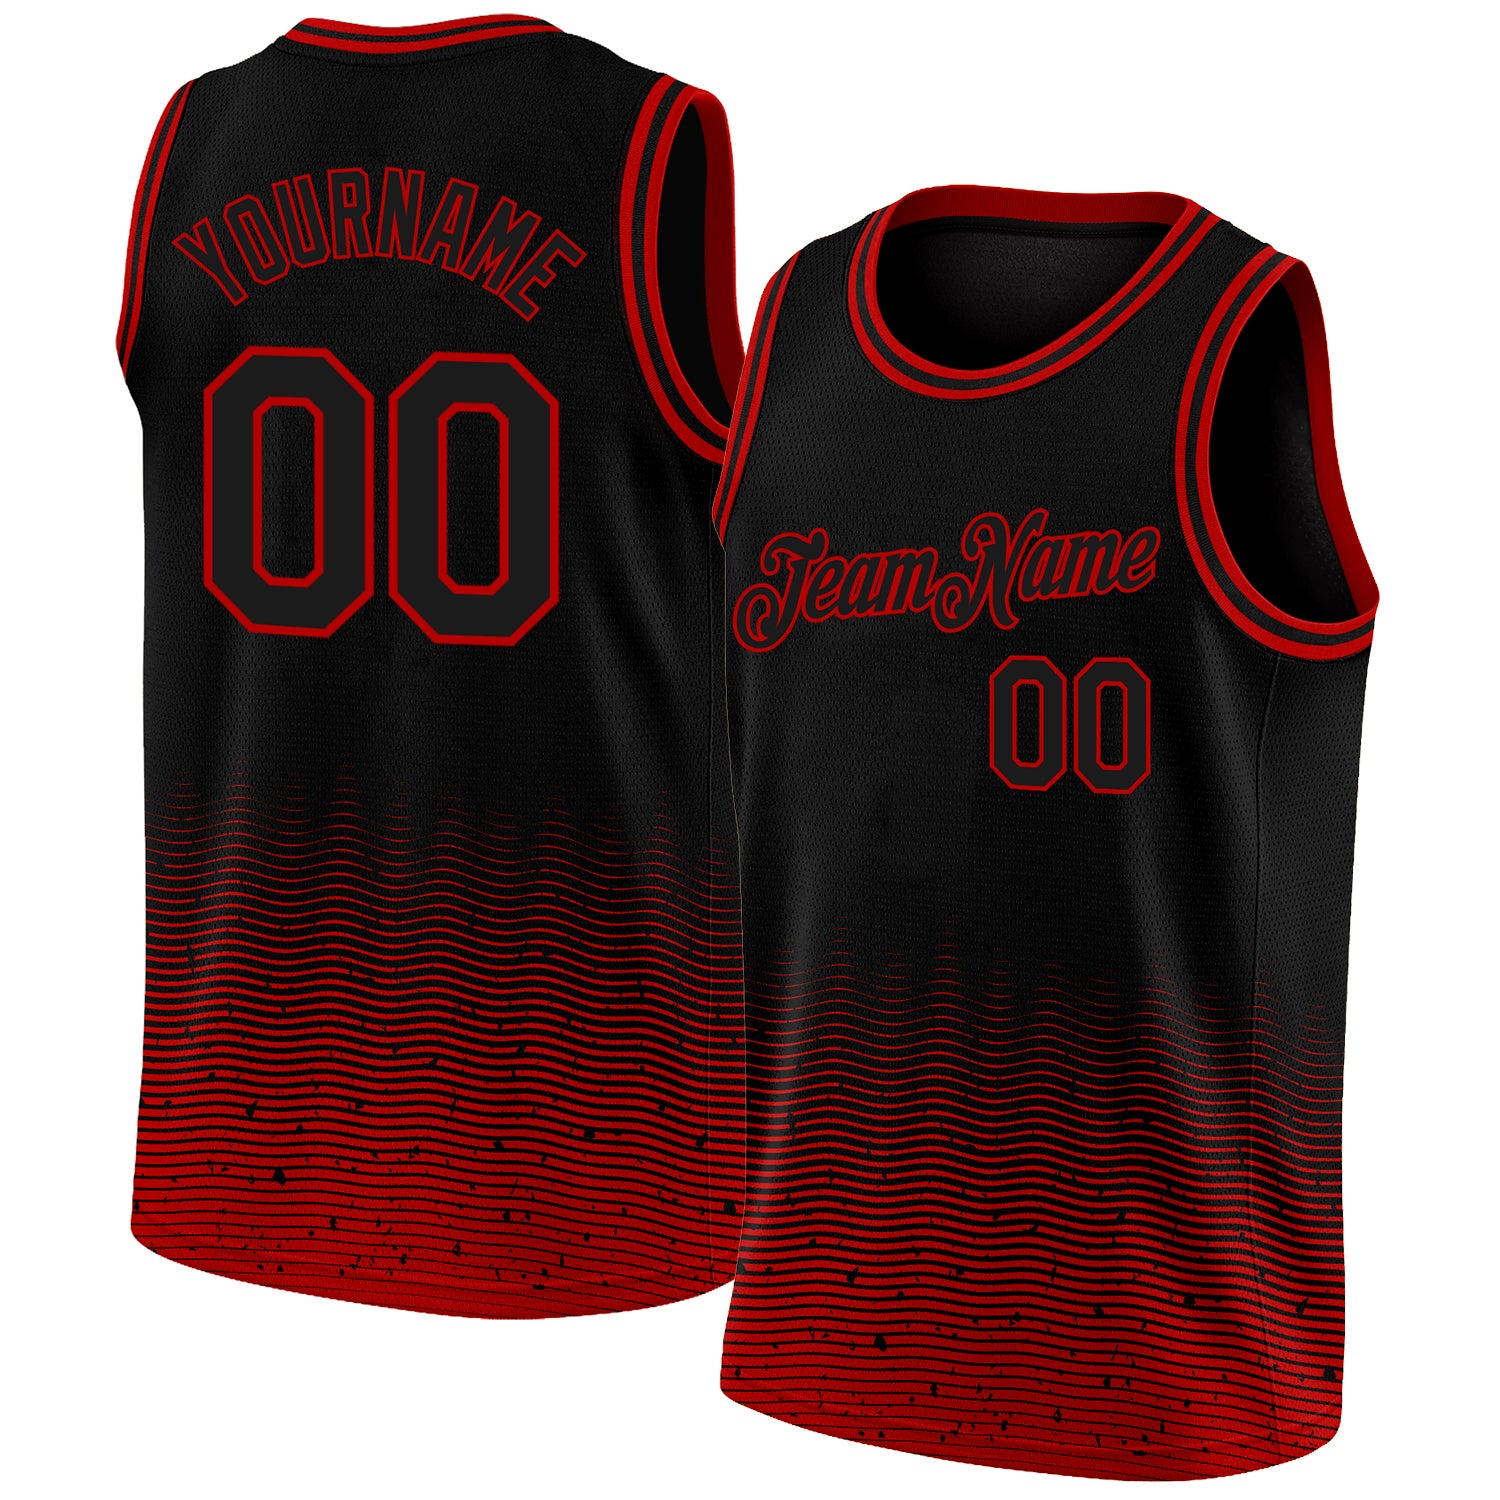 Basketball Sportswear in Black & Red Designs Jerseys